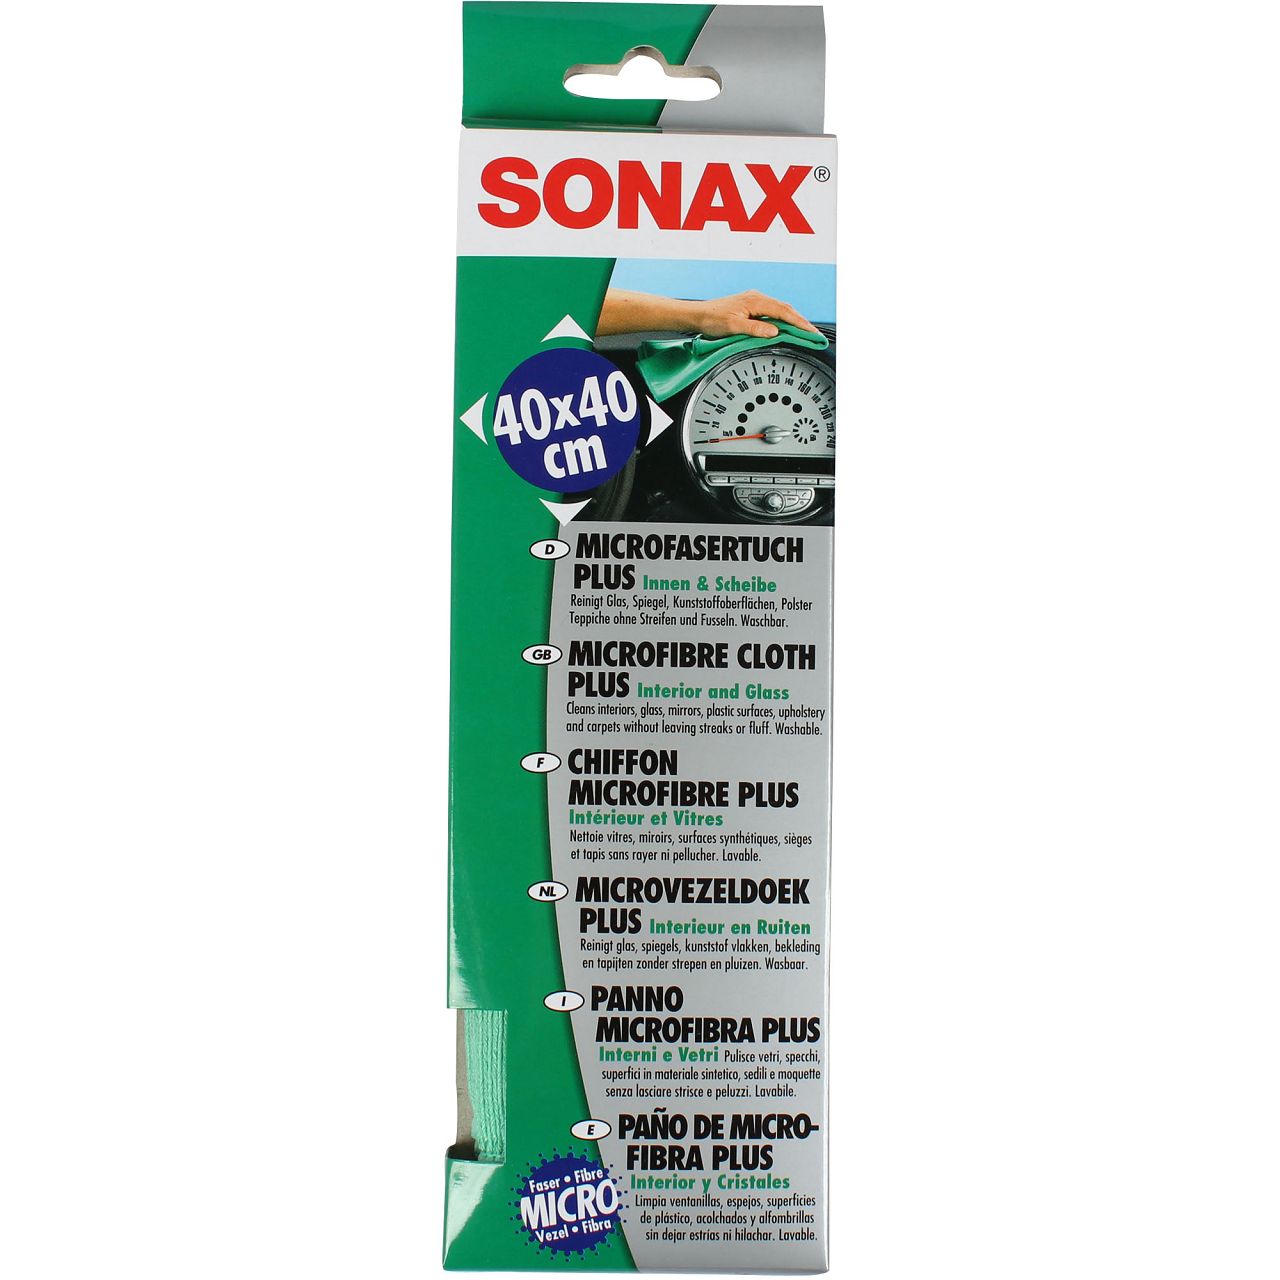 SONAX Microfaser Tuch PLUS Innen und Scheibe 1 Stück Reinigung 416500